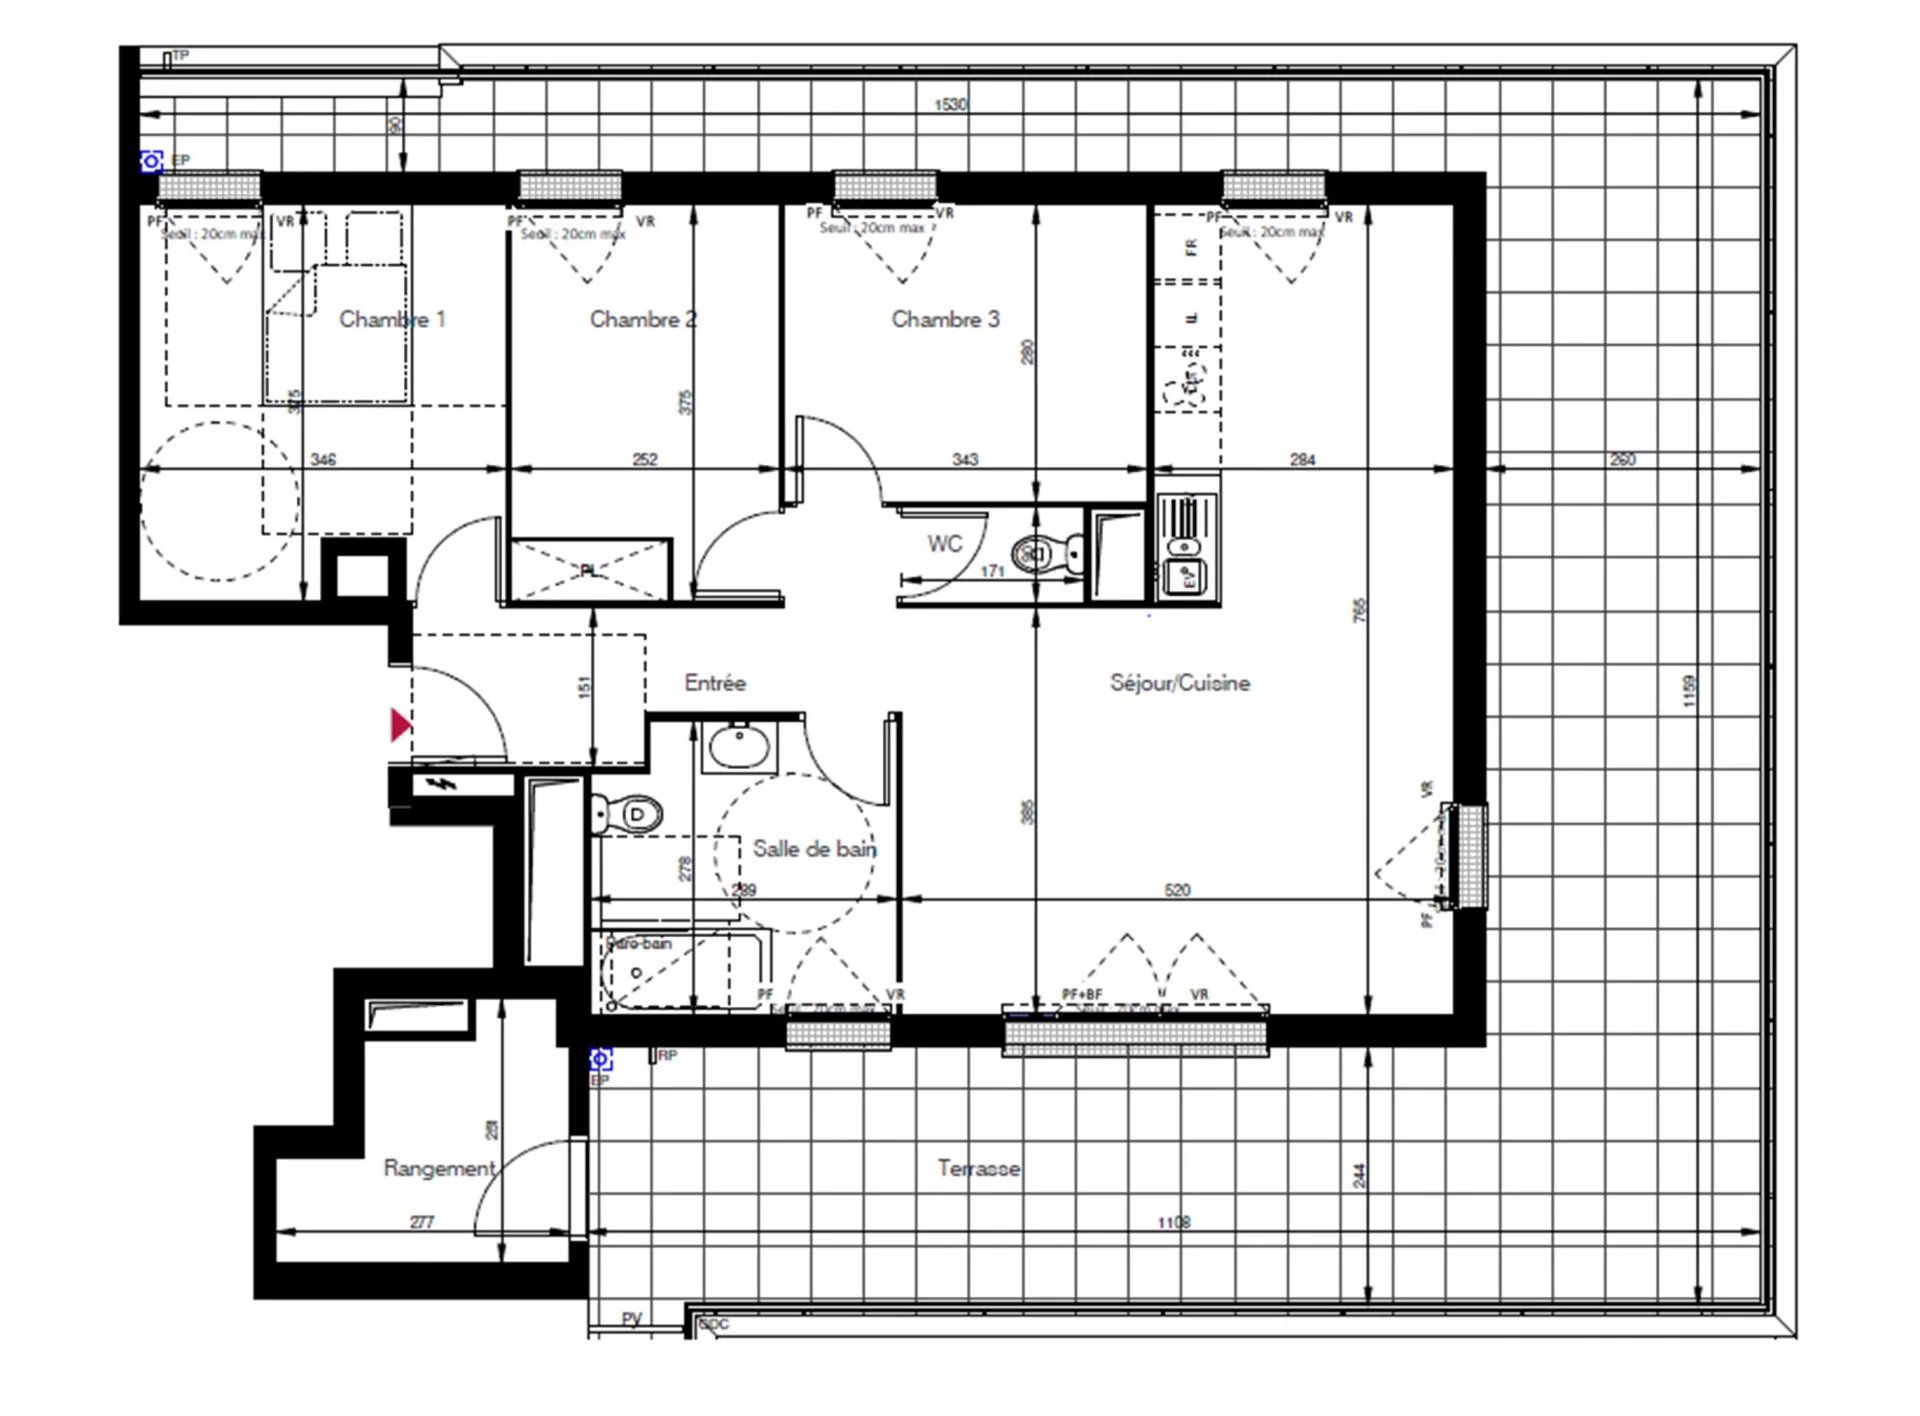 T4  neuf en attique  - 83.6m² - 3 chambres  - terrasse 66m²